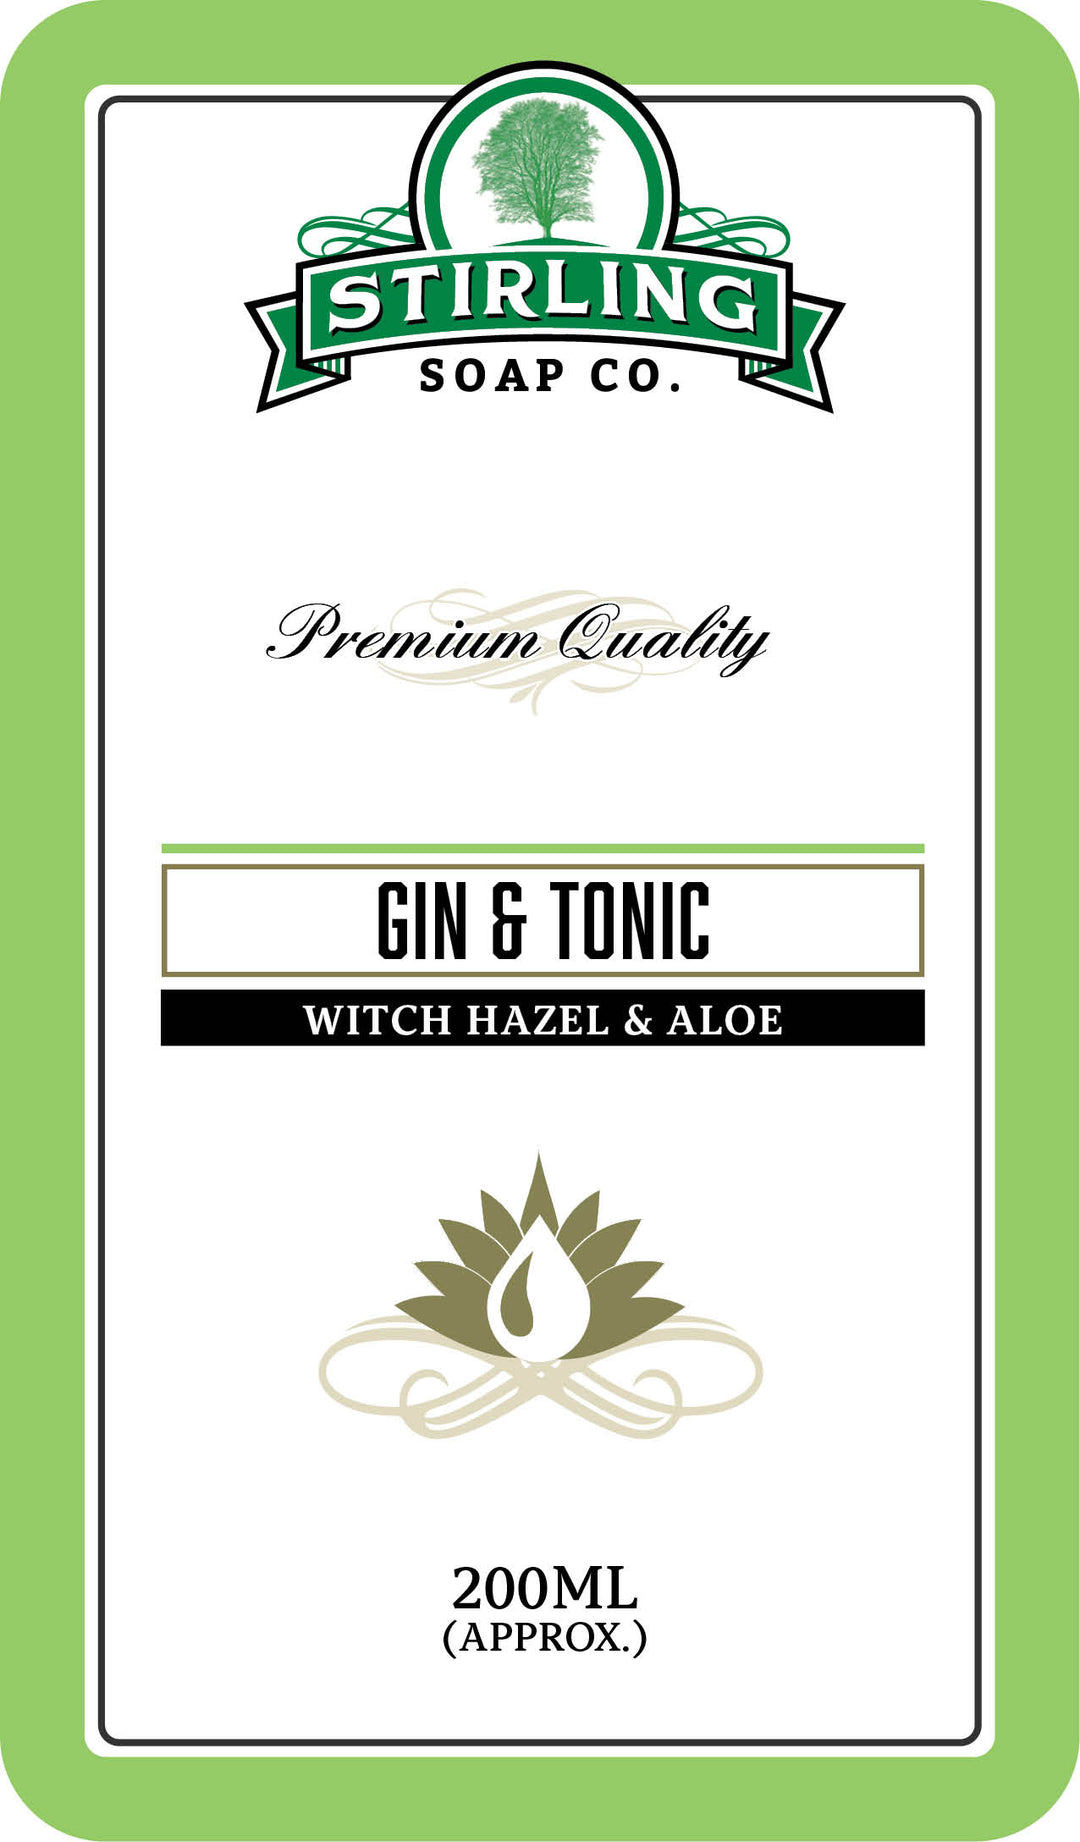 Gin & Tonic Witch Hazel & Aloe